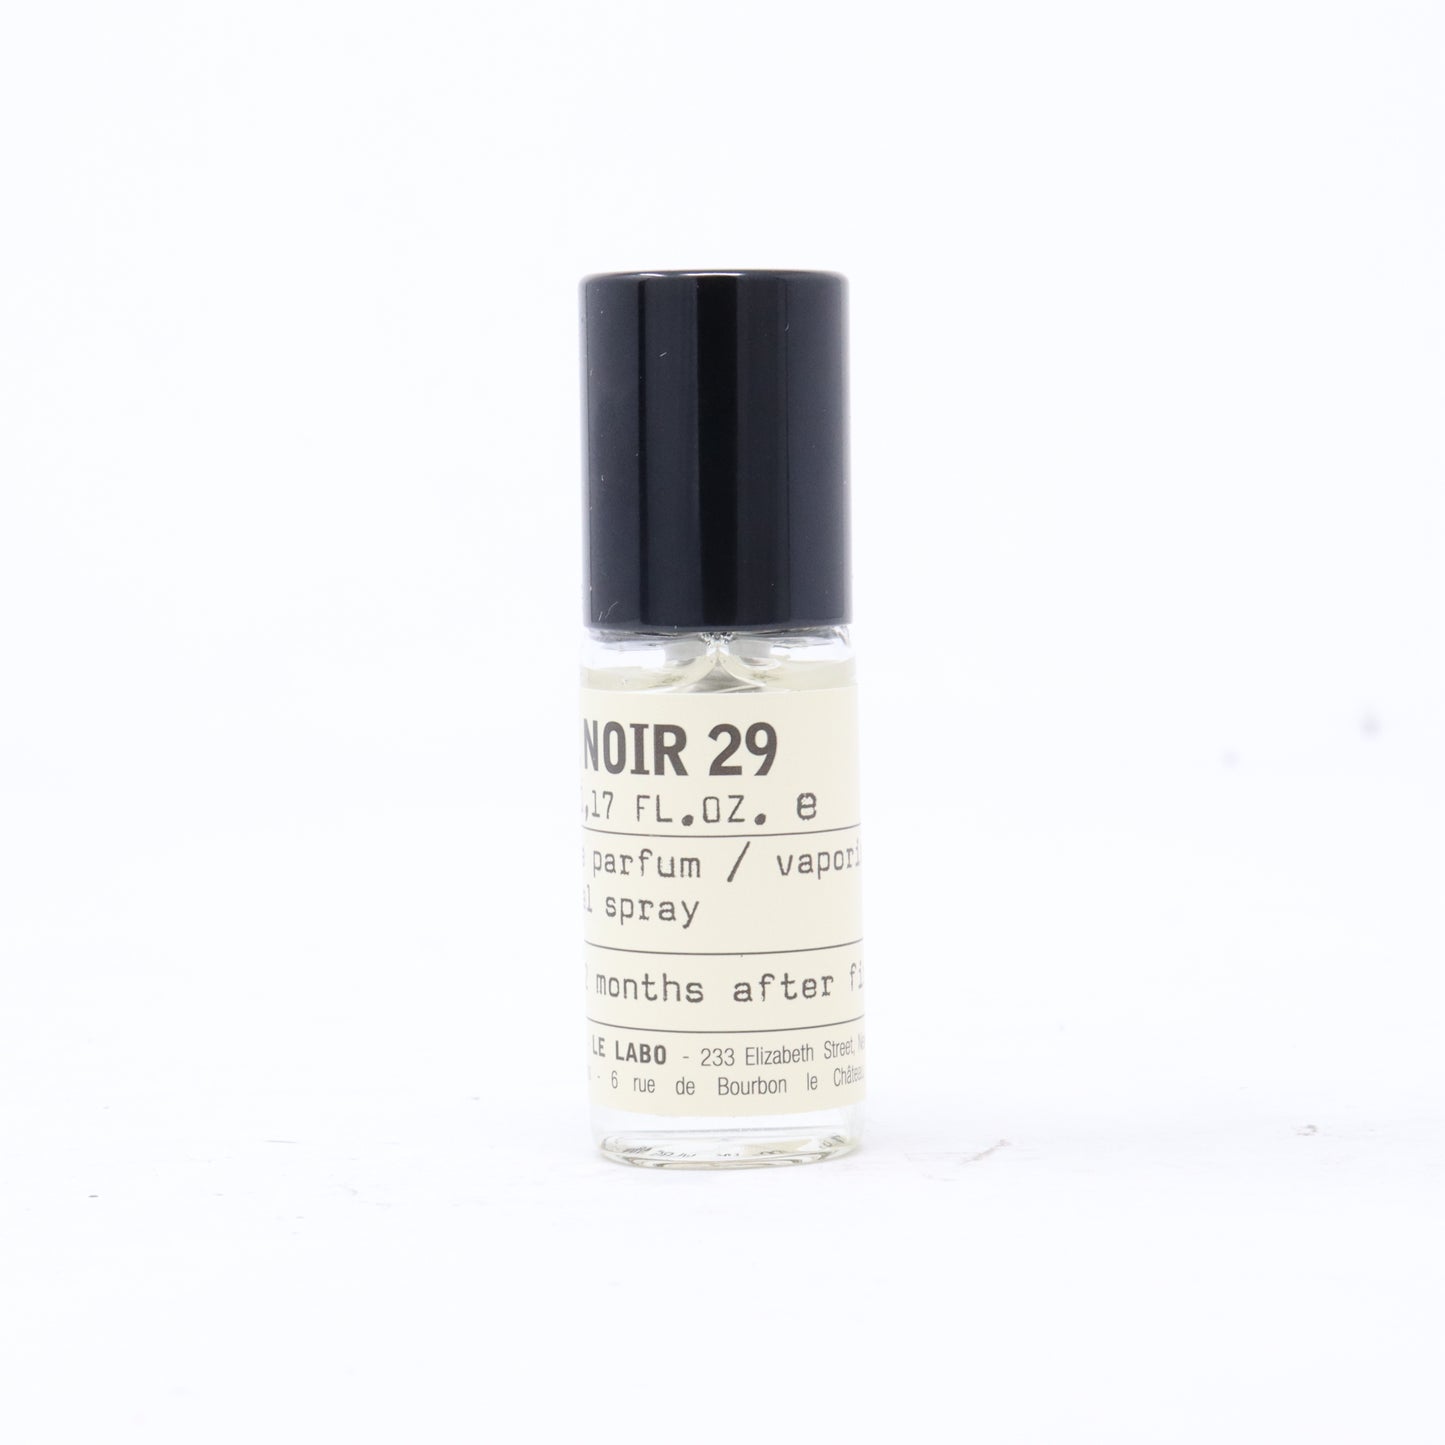 The Noir 29 Eau De Parfum 5 ml